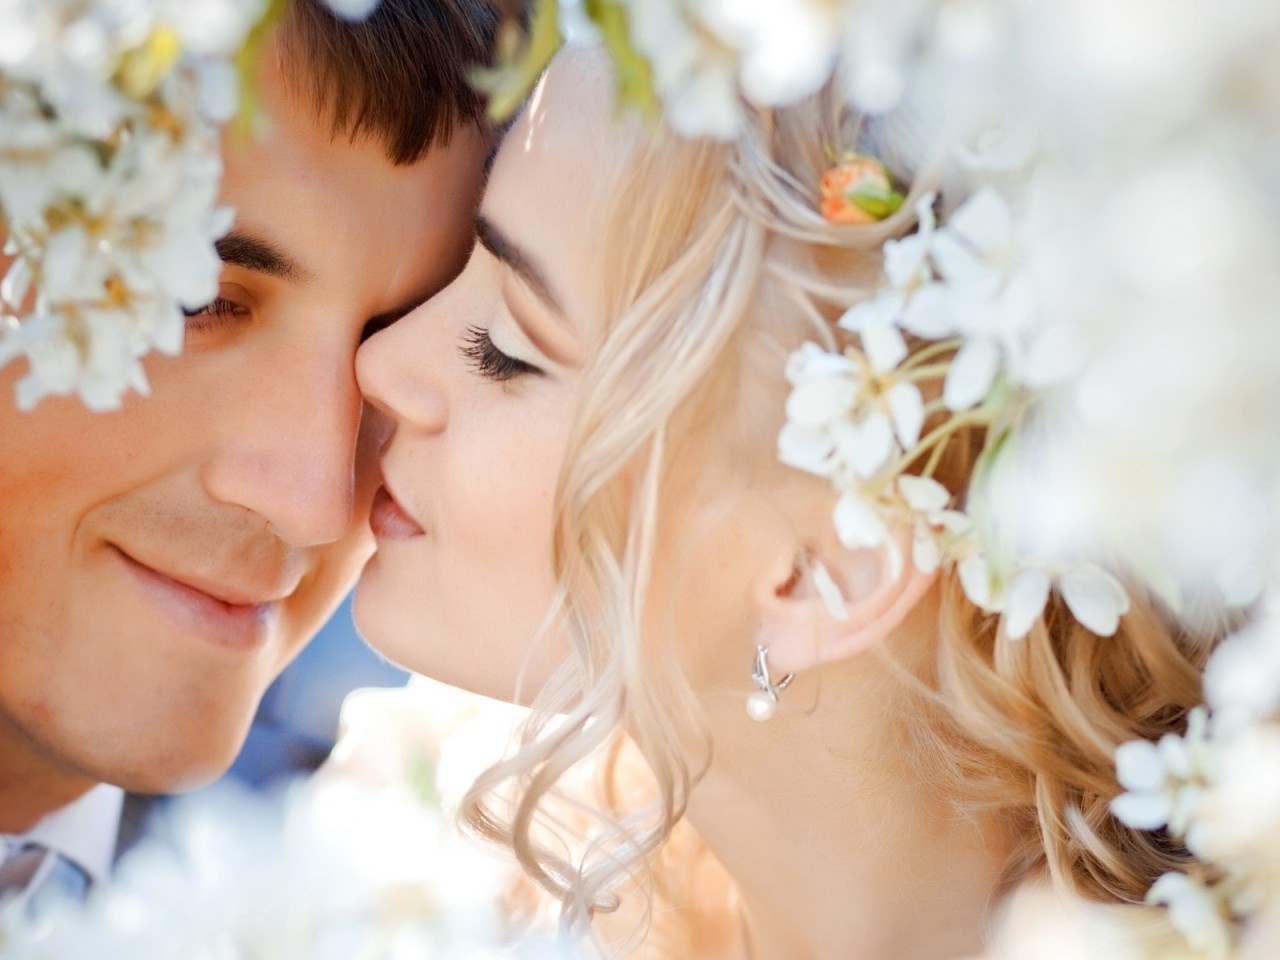 Sociologii au determinat "componentele" unei căsnicii fericite